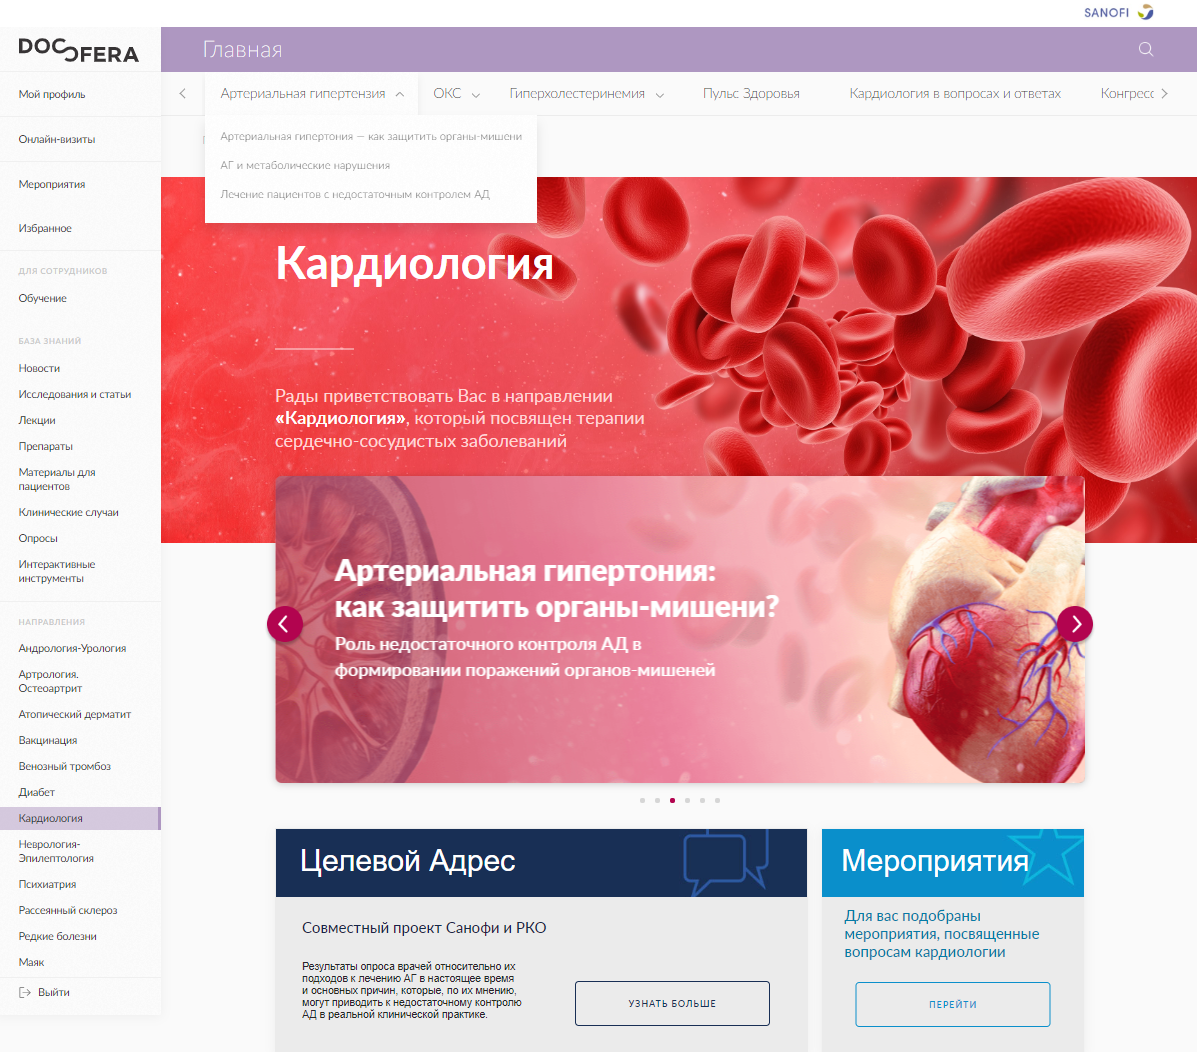 Docsfera.ru - веб-портал для специалистов здравоохранения компании Санофи